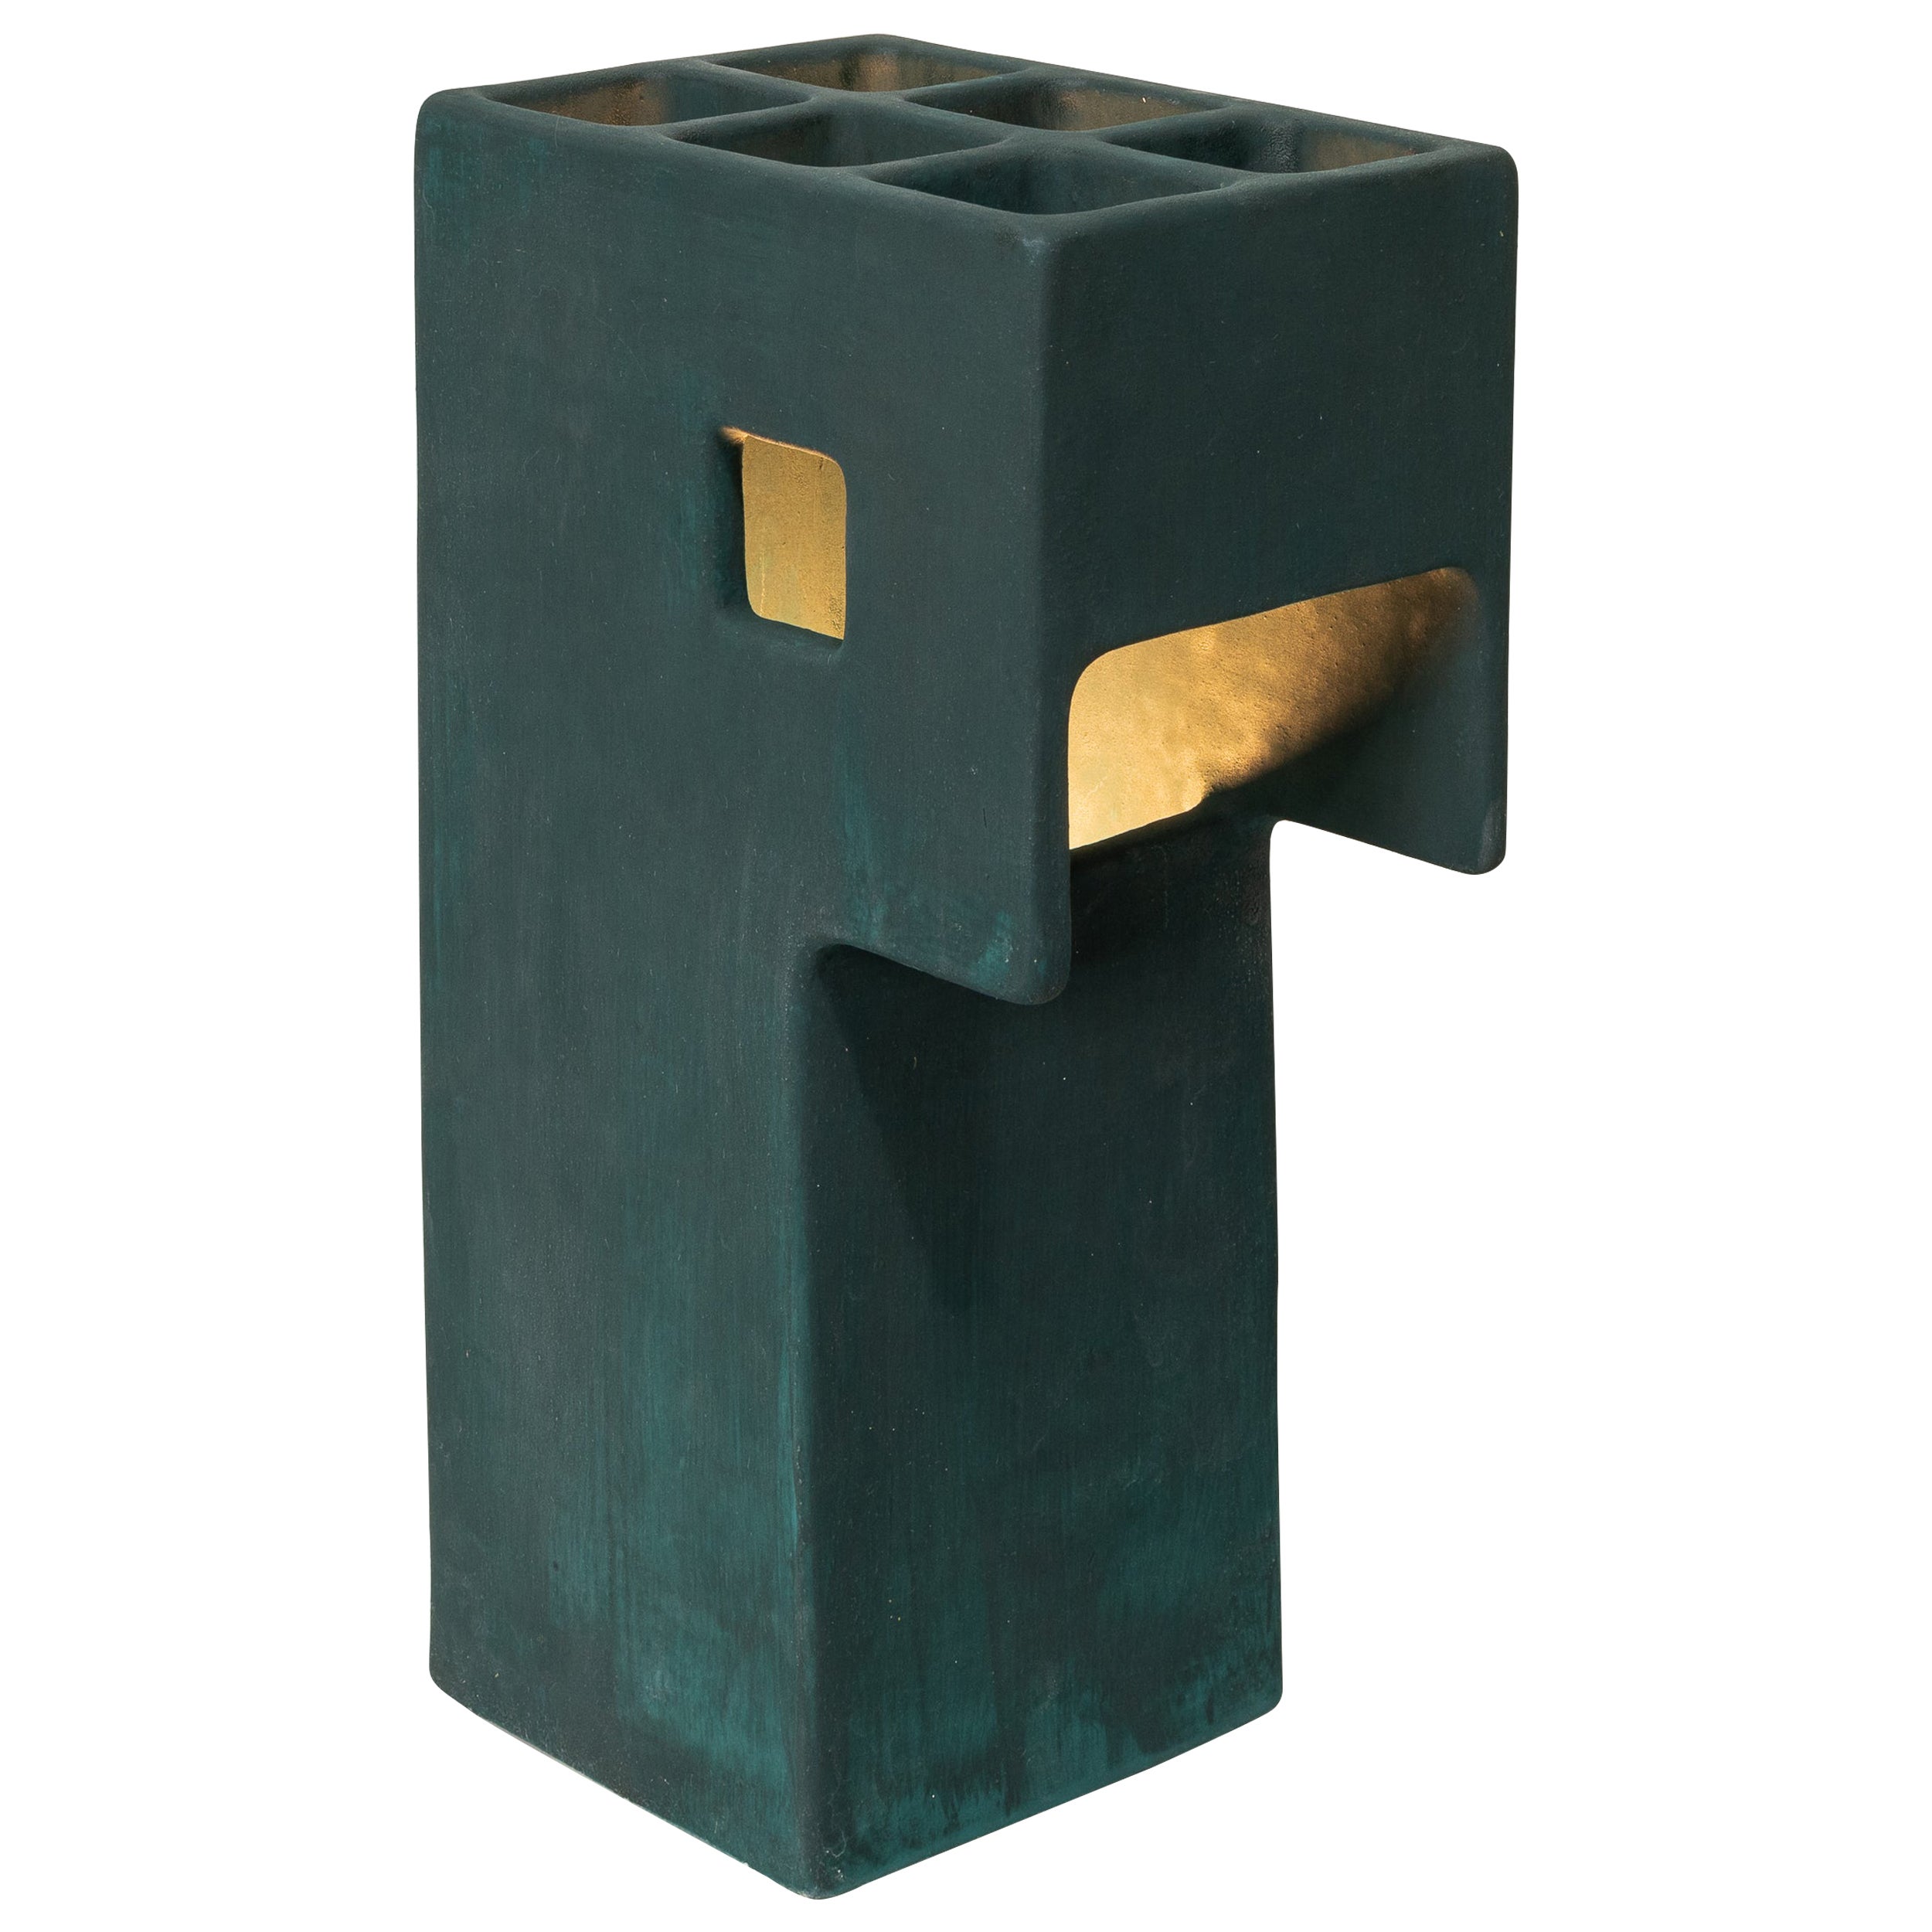 Ding Dong-Tischlampe von Luft Tanaka, Keramik, dunkelgrün, brutalistisch, geometrisch